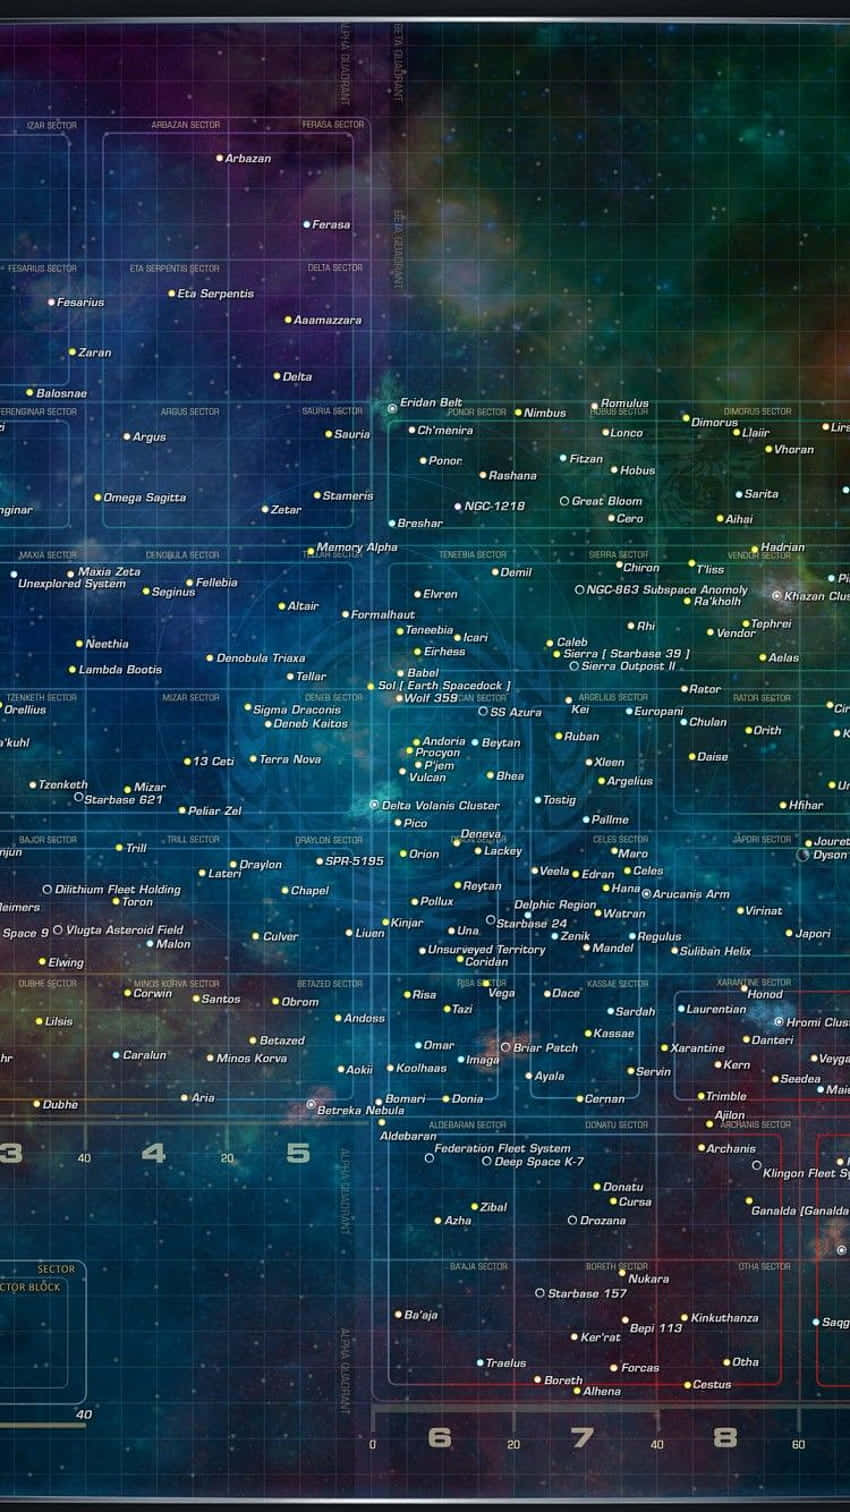 Download Star Trek Phone Star Maps Wallpaper 